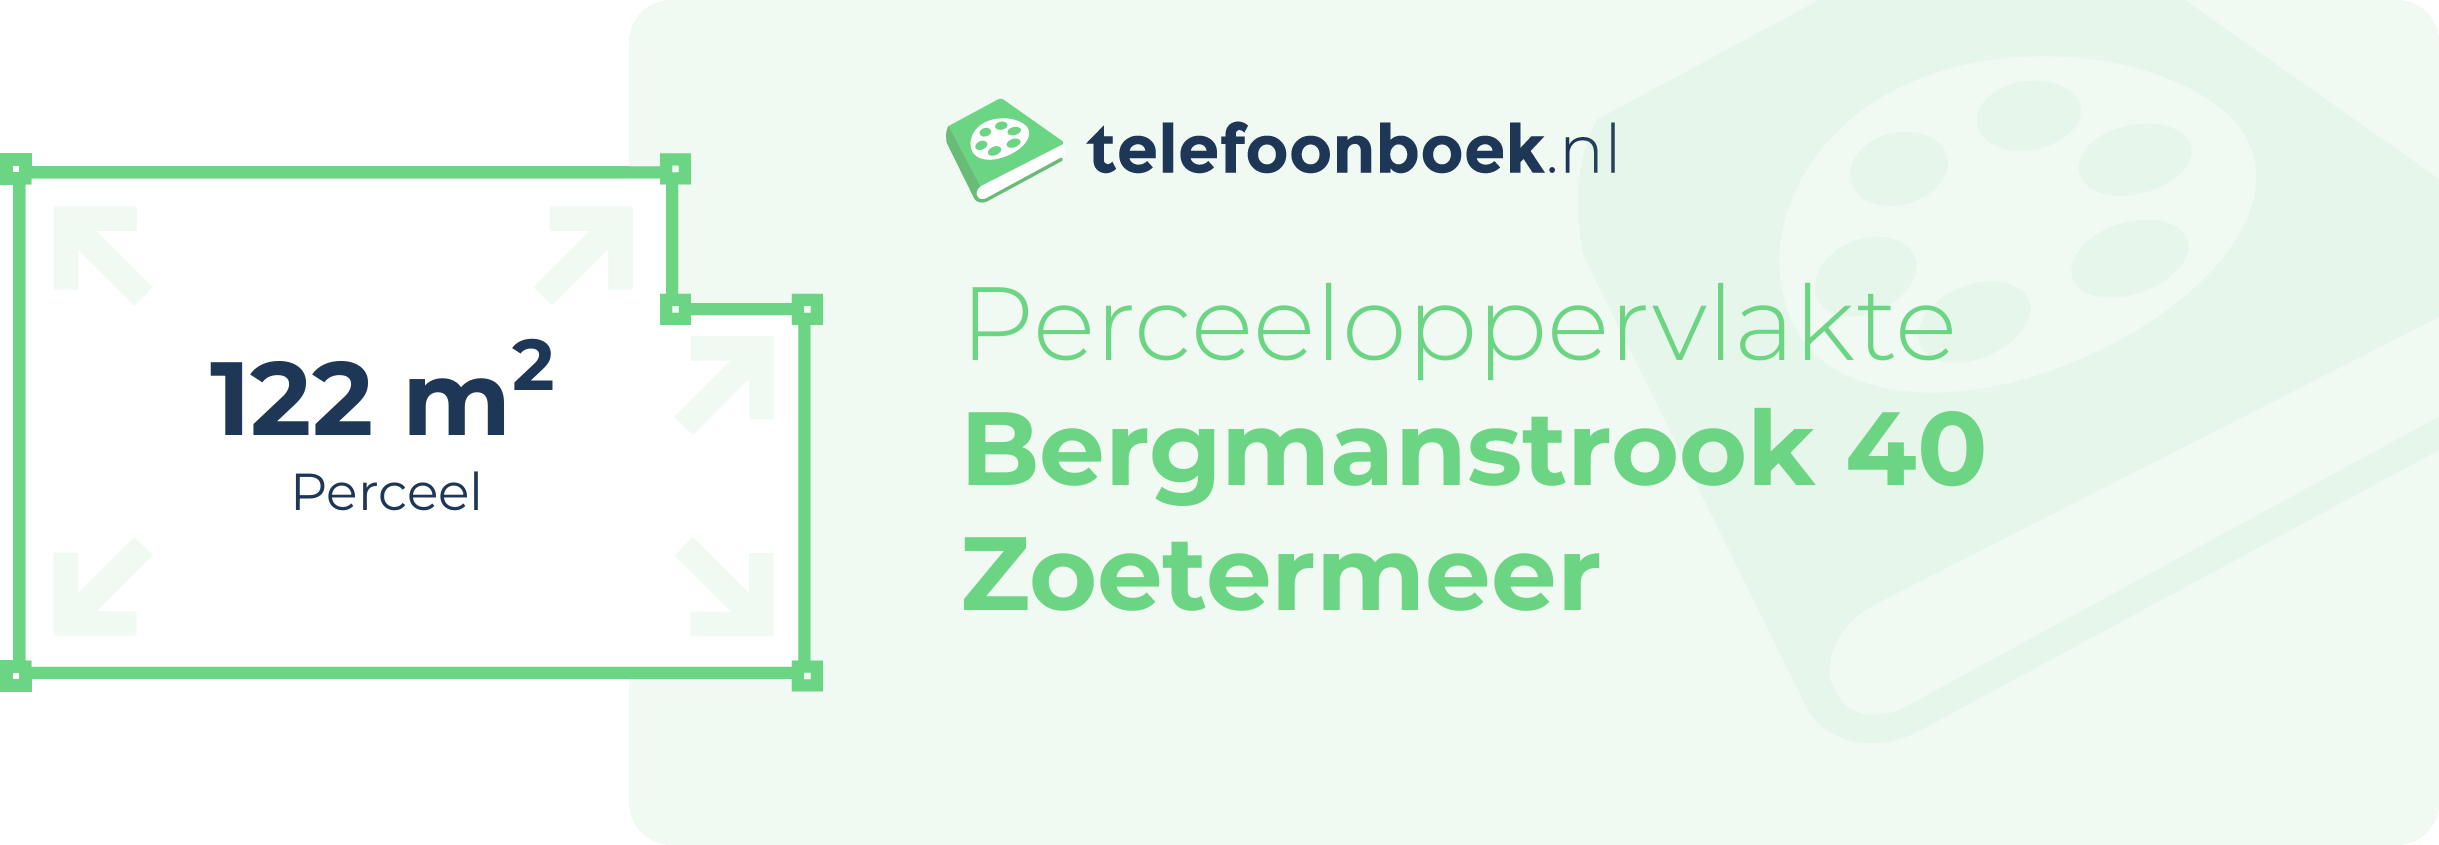 Perceeloppervlakte Bergmanstrook 40 Zoetermeer